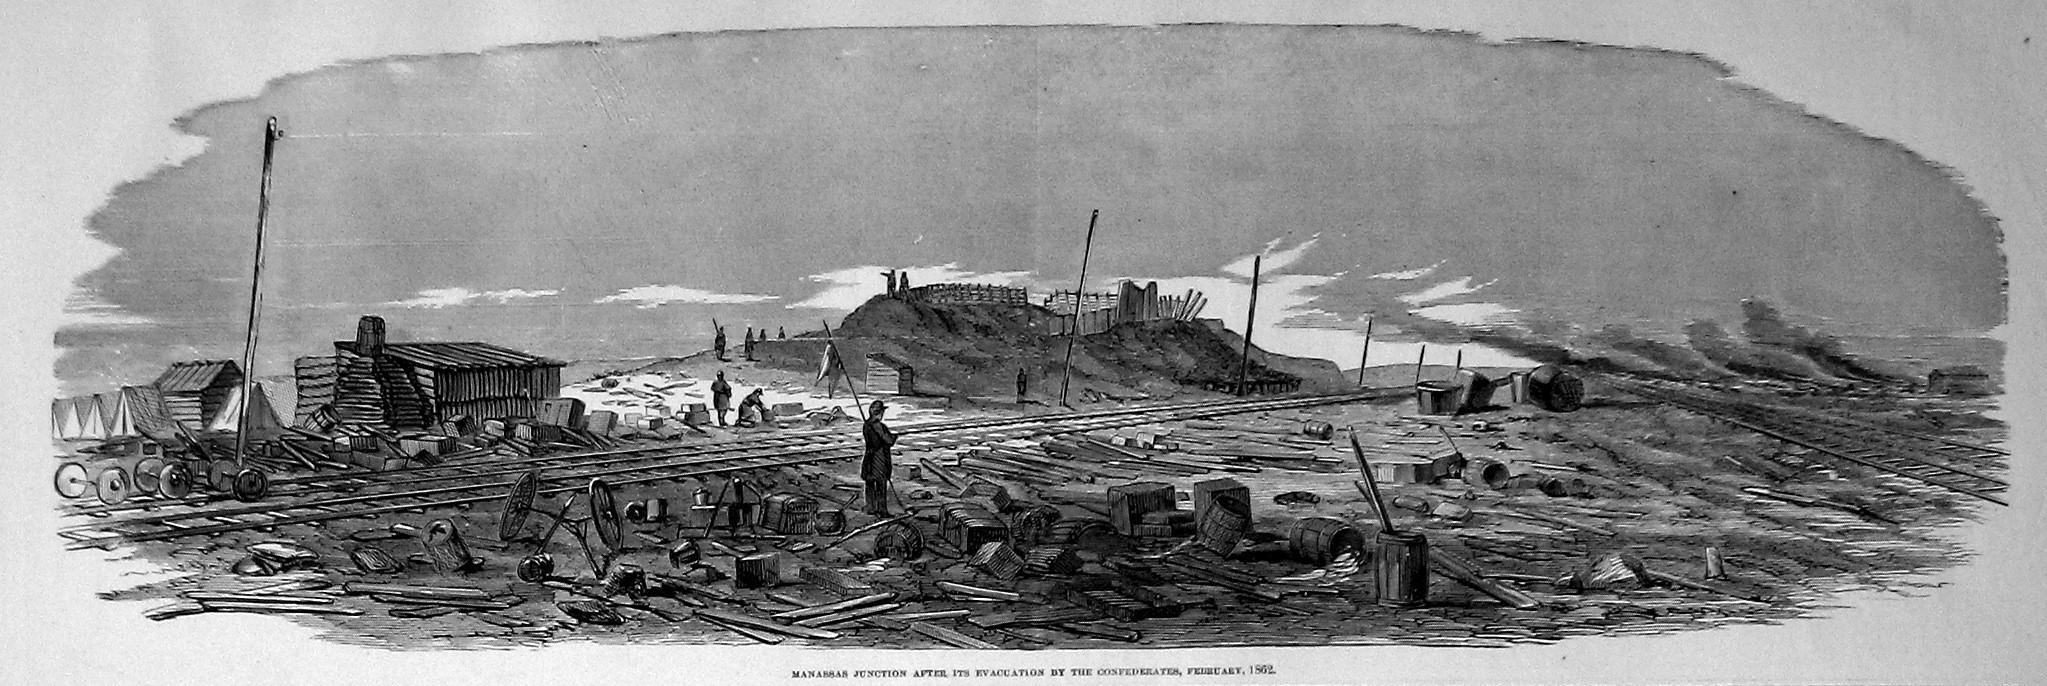 manassas junction february 1862